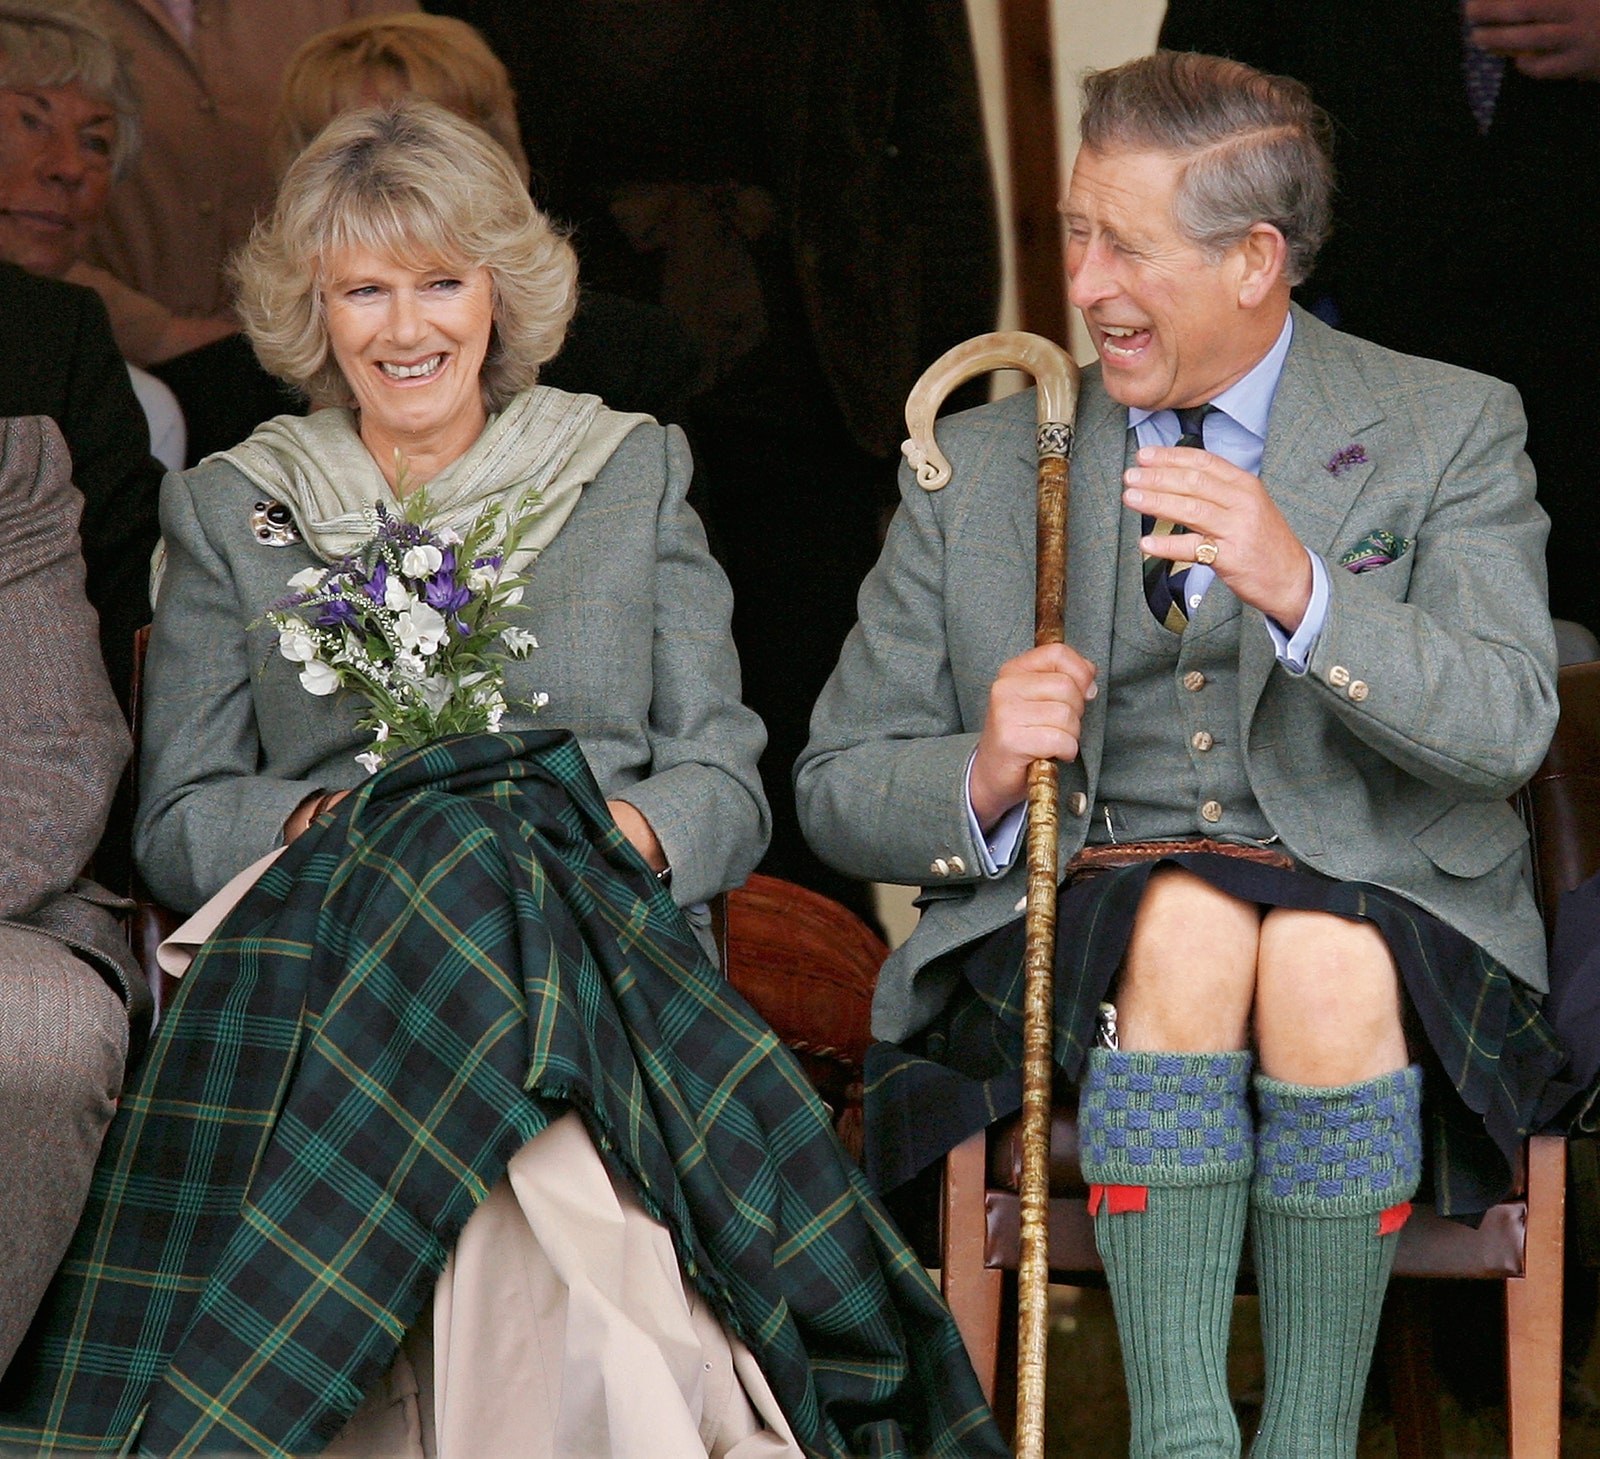 Камилла ПаркерБоулз и принц Чарльз на ежегодных играх в шотландской деревне 2004